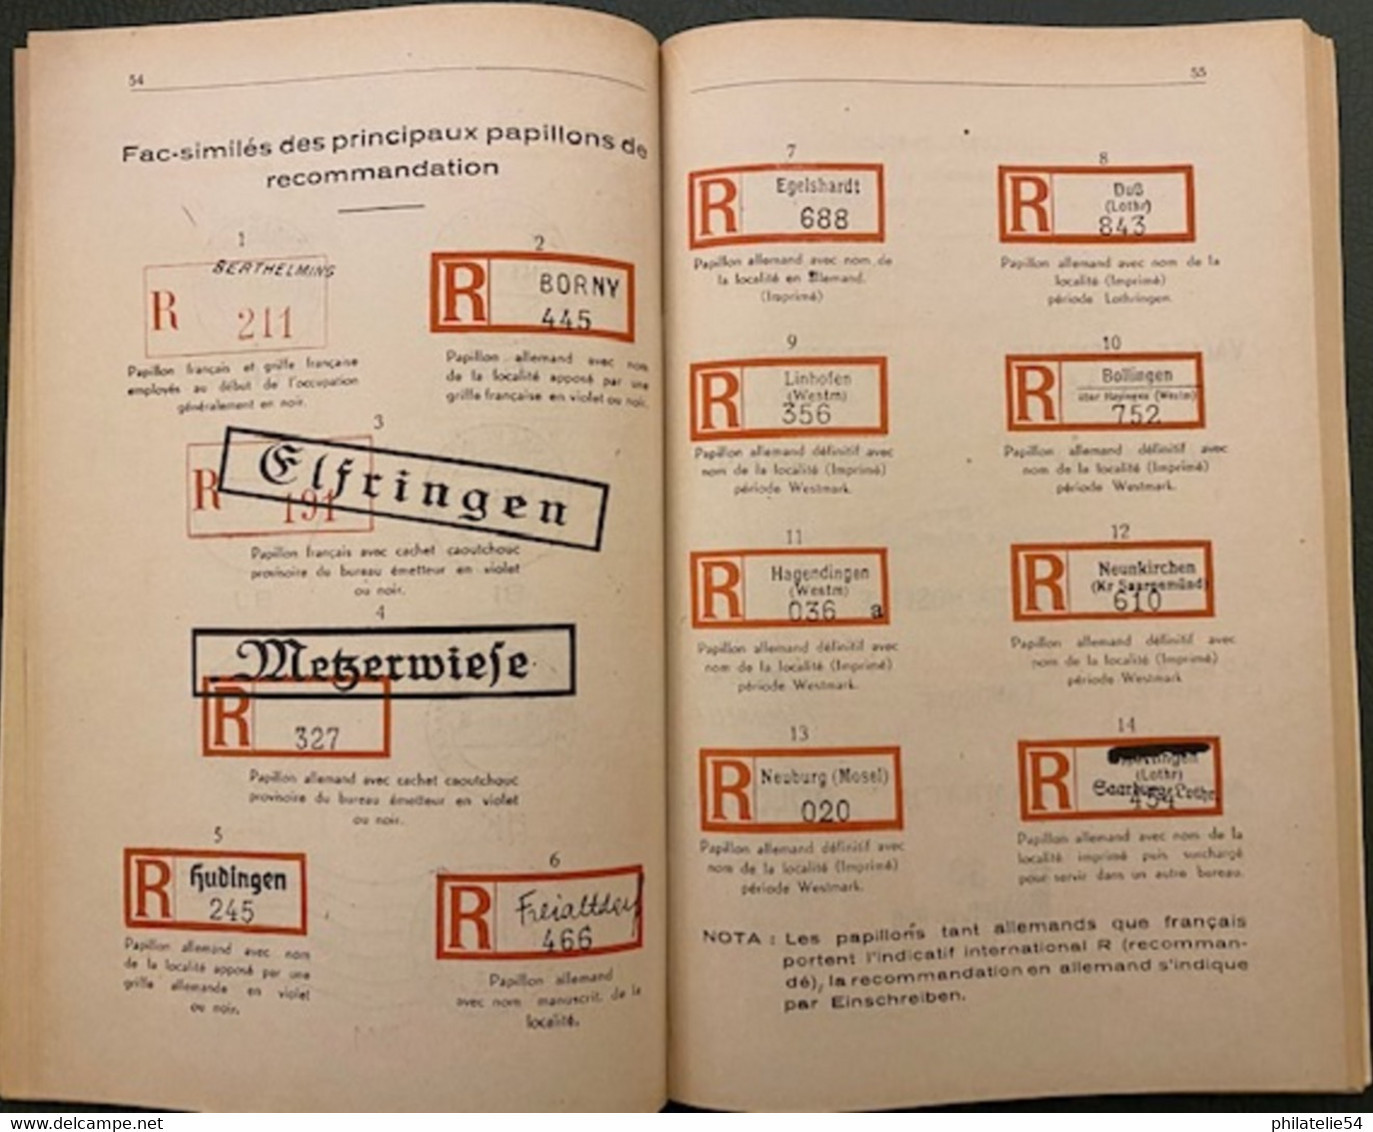 Les Cachets Postaux De L'occupation Allemande En Moselle  1940-1944 - Books On Collecting